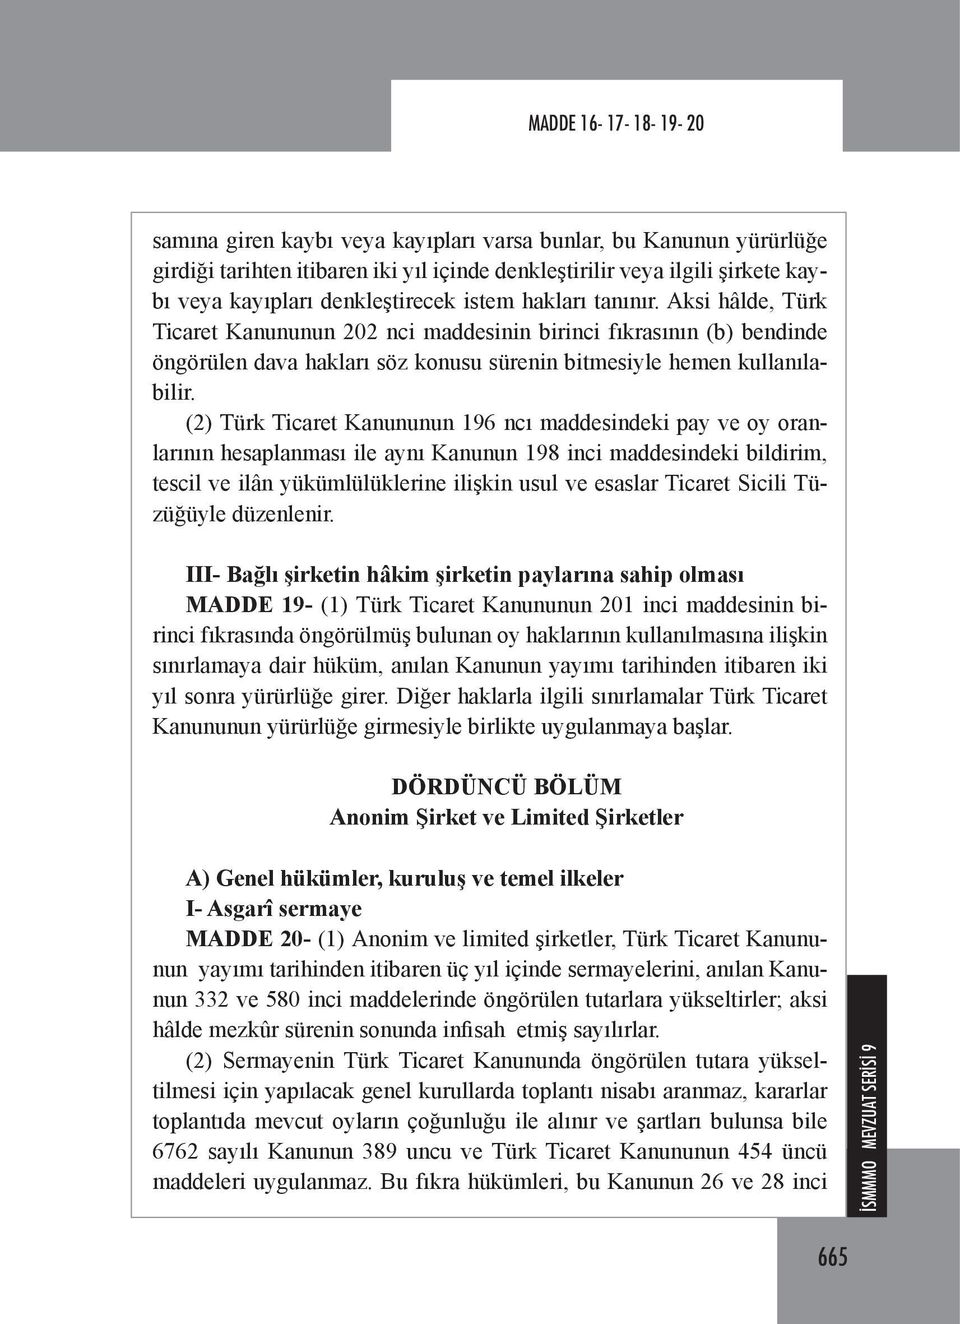 (2) Türk Ticaret Kanununun 196 ncı maddesindeki pay ve oy oranlarının hesaplanması ile aynı Kanunun 198 inci maddesindeki bildirim, tescil ve ilân yükümlülüklerine ilişkin usul ve esaslar Ticaret